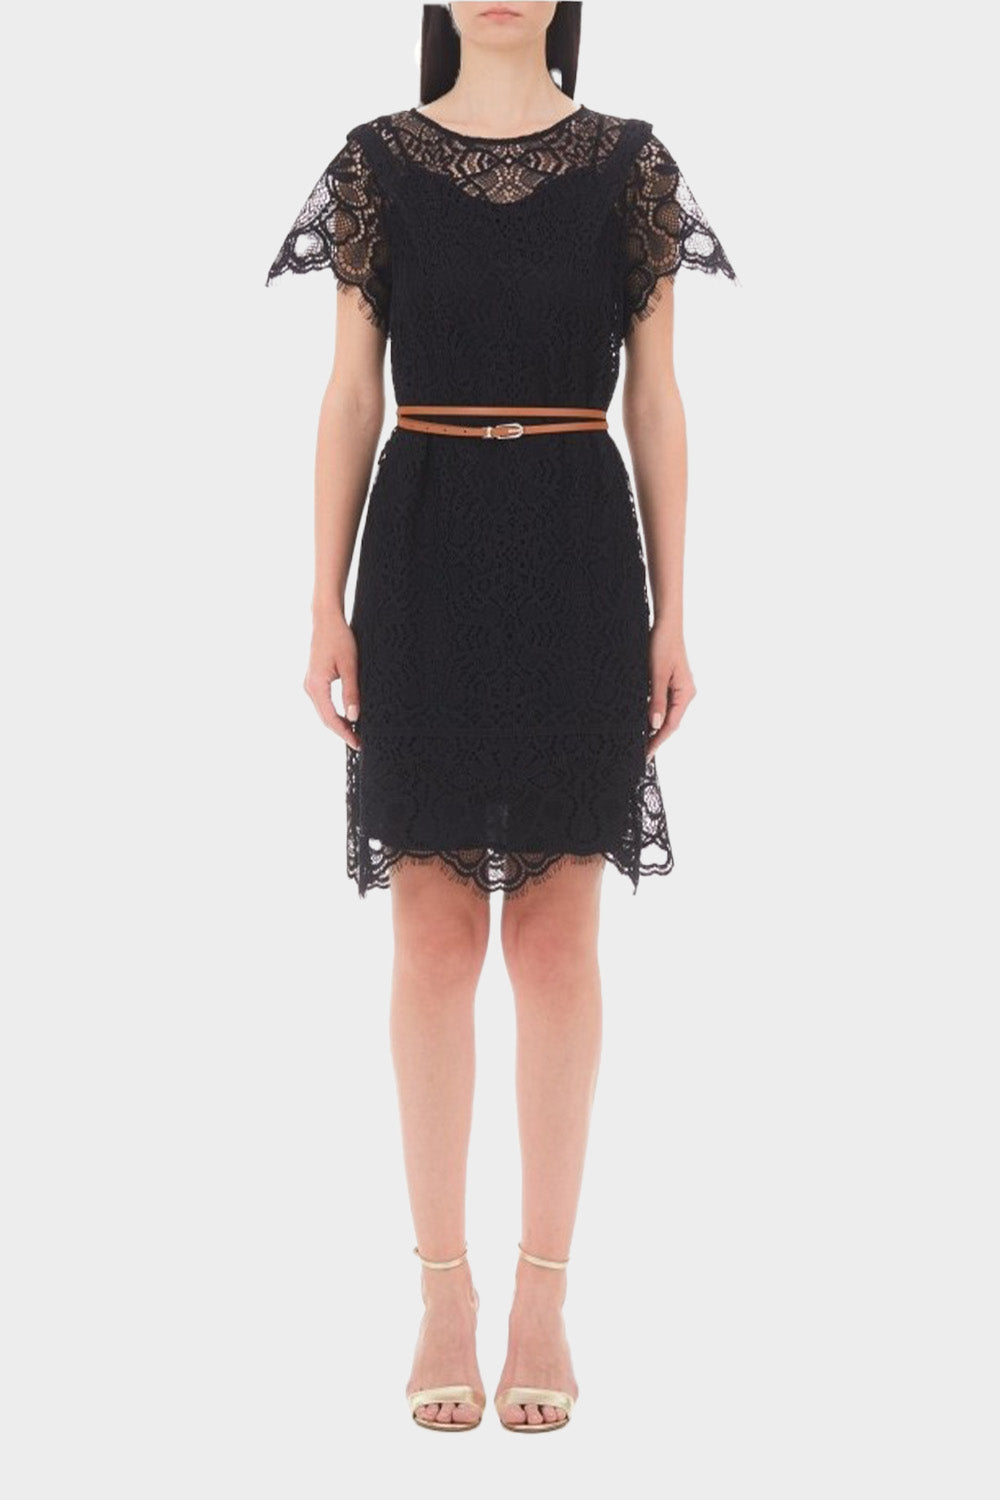 שמלת תחרה לנשים חגורה חומה LIU JO Vendome online | ונדום .